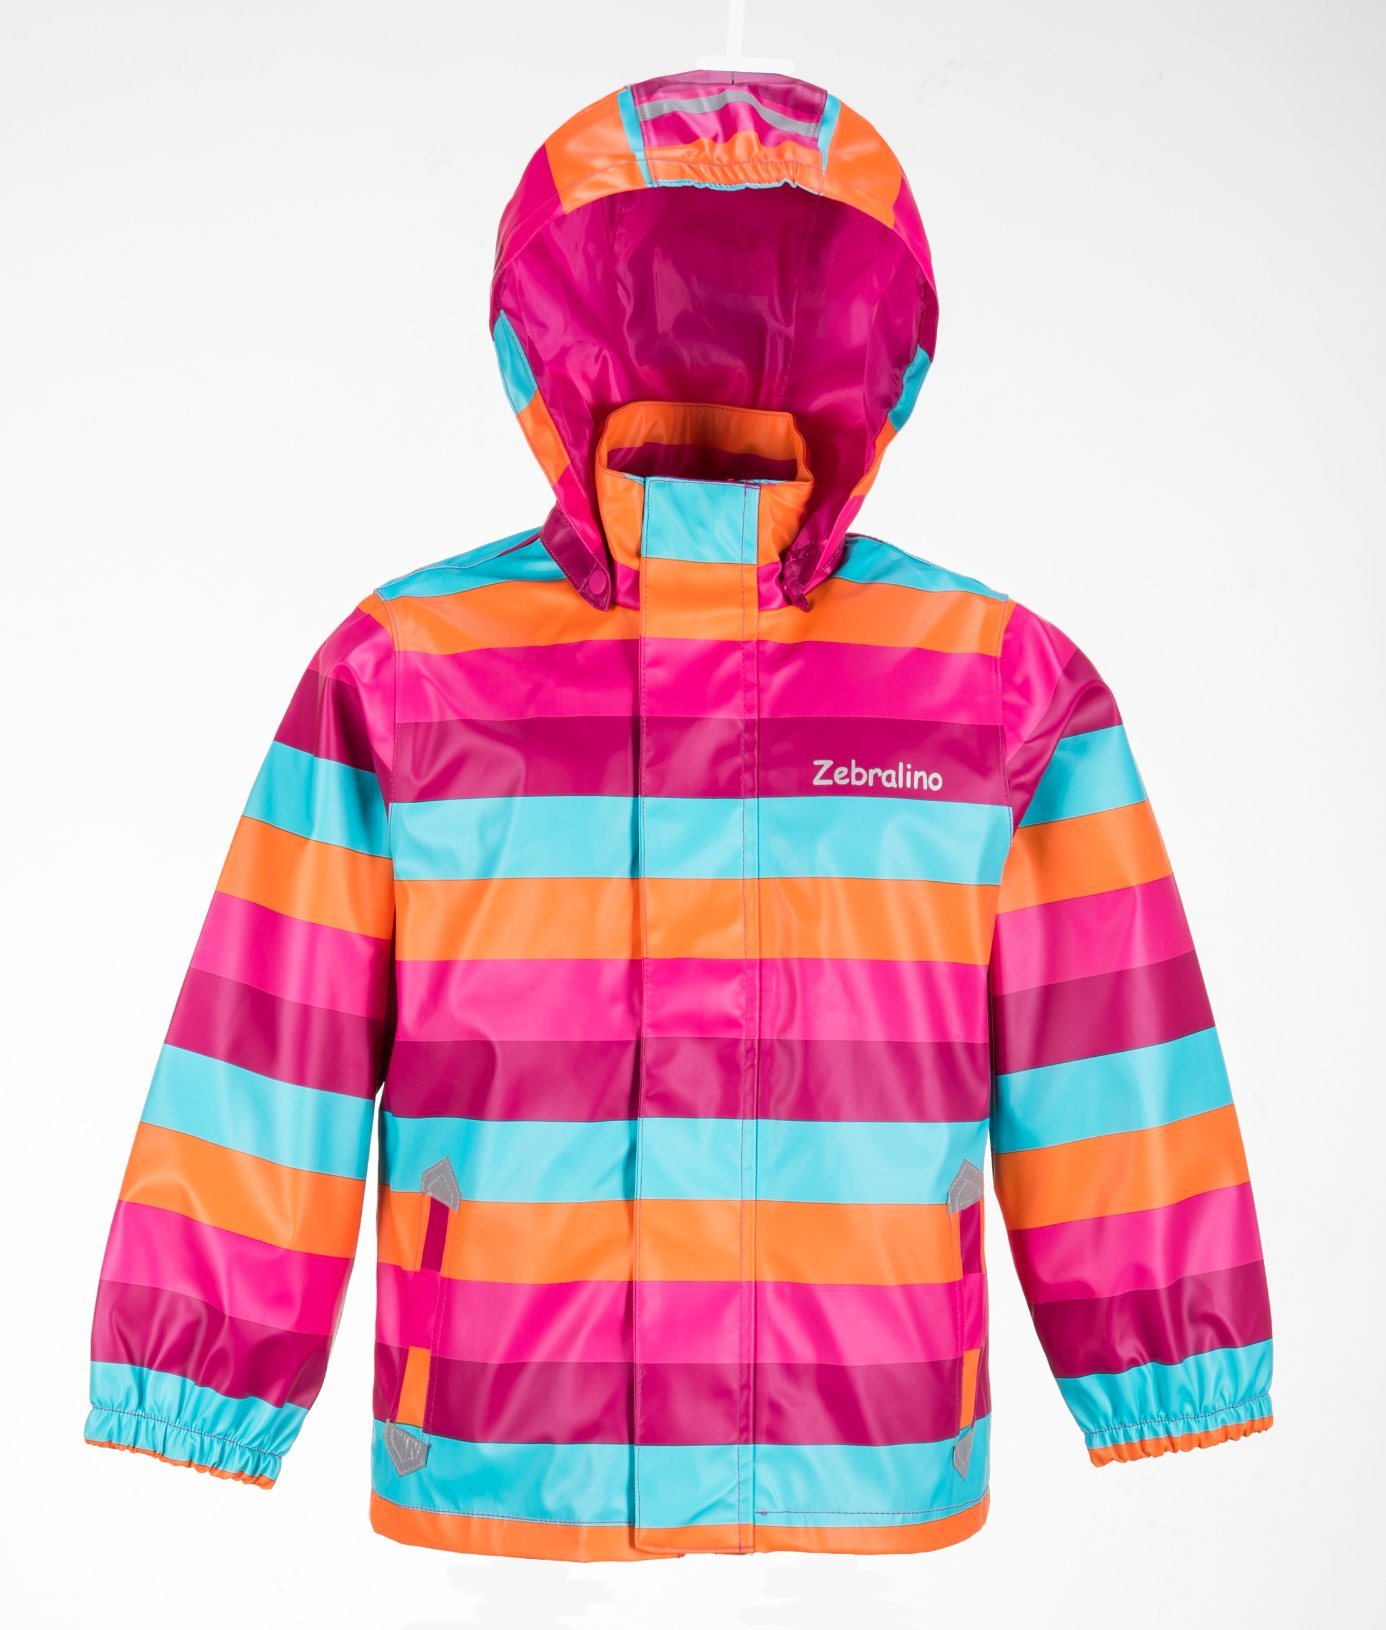 Cute Half PU Rainbow Color Kid Raincoat